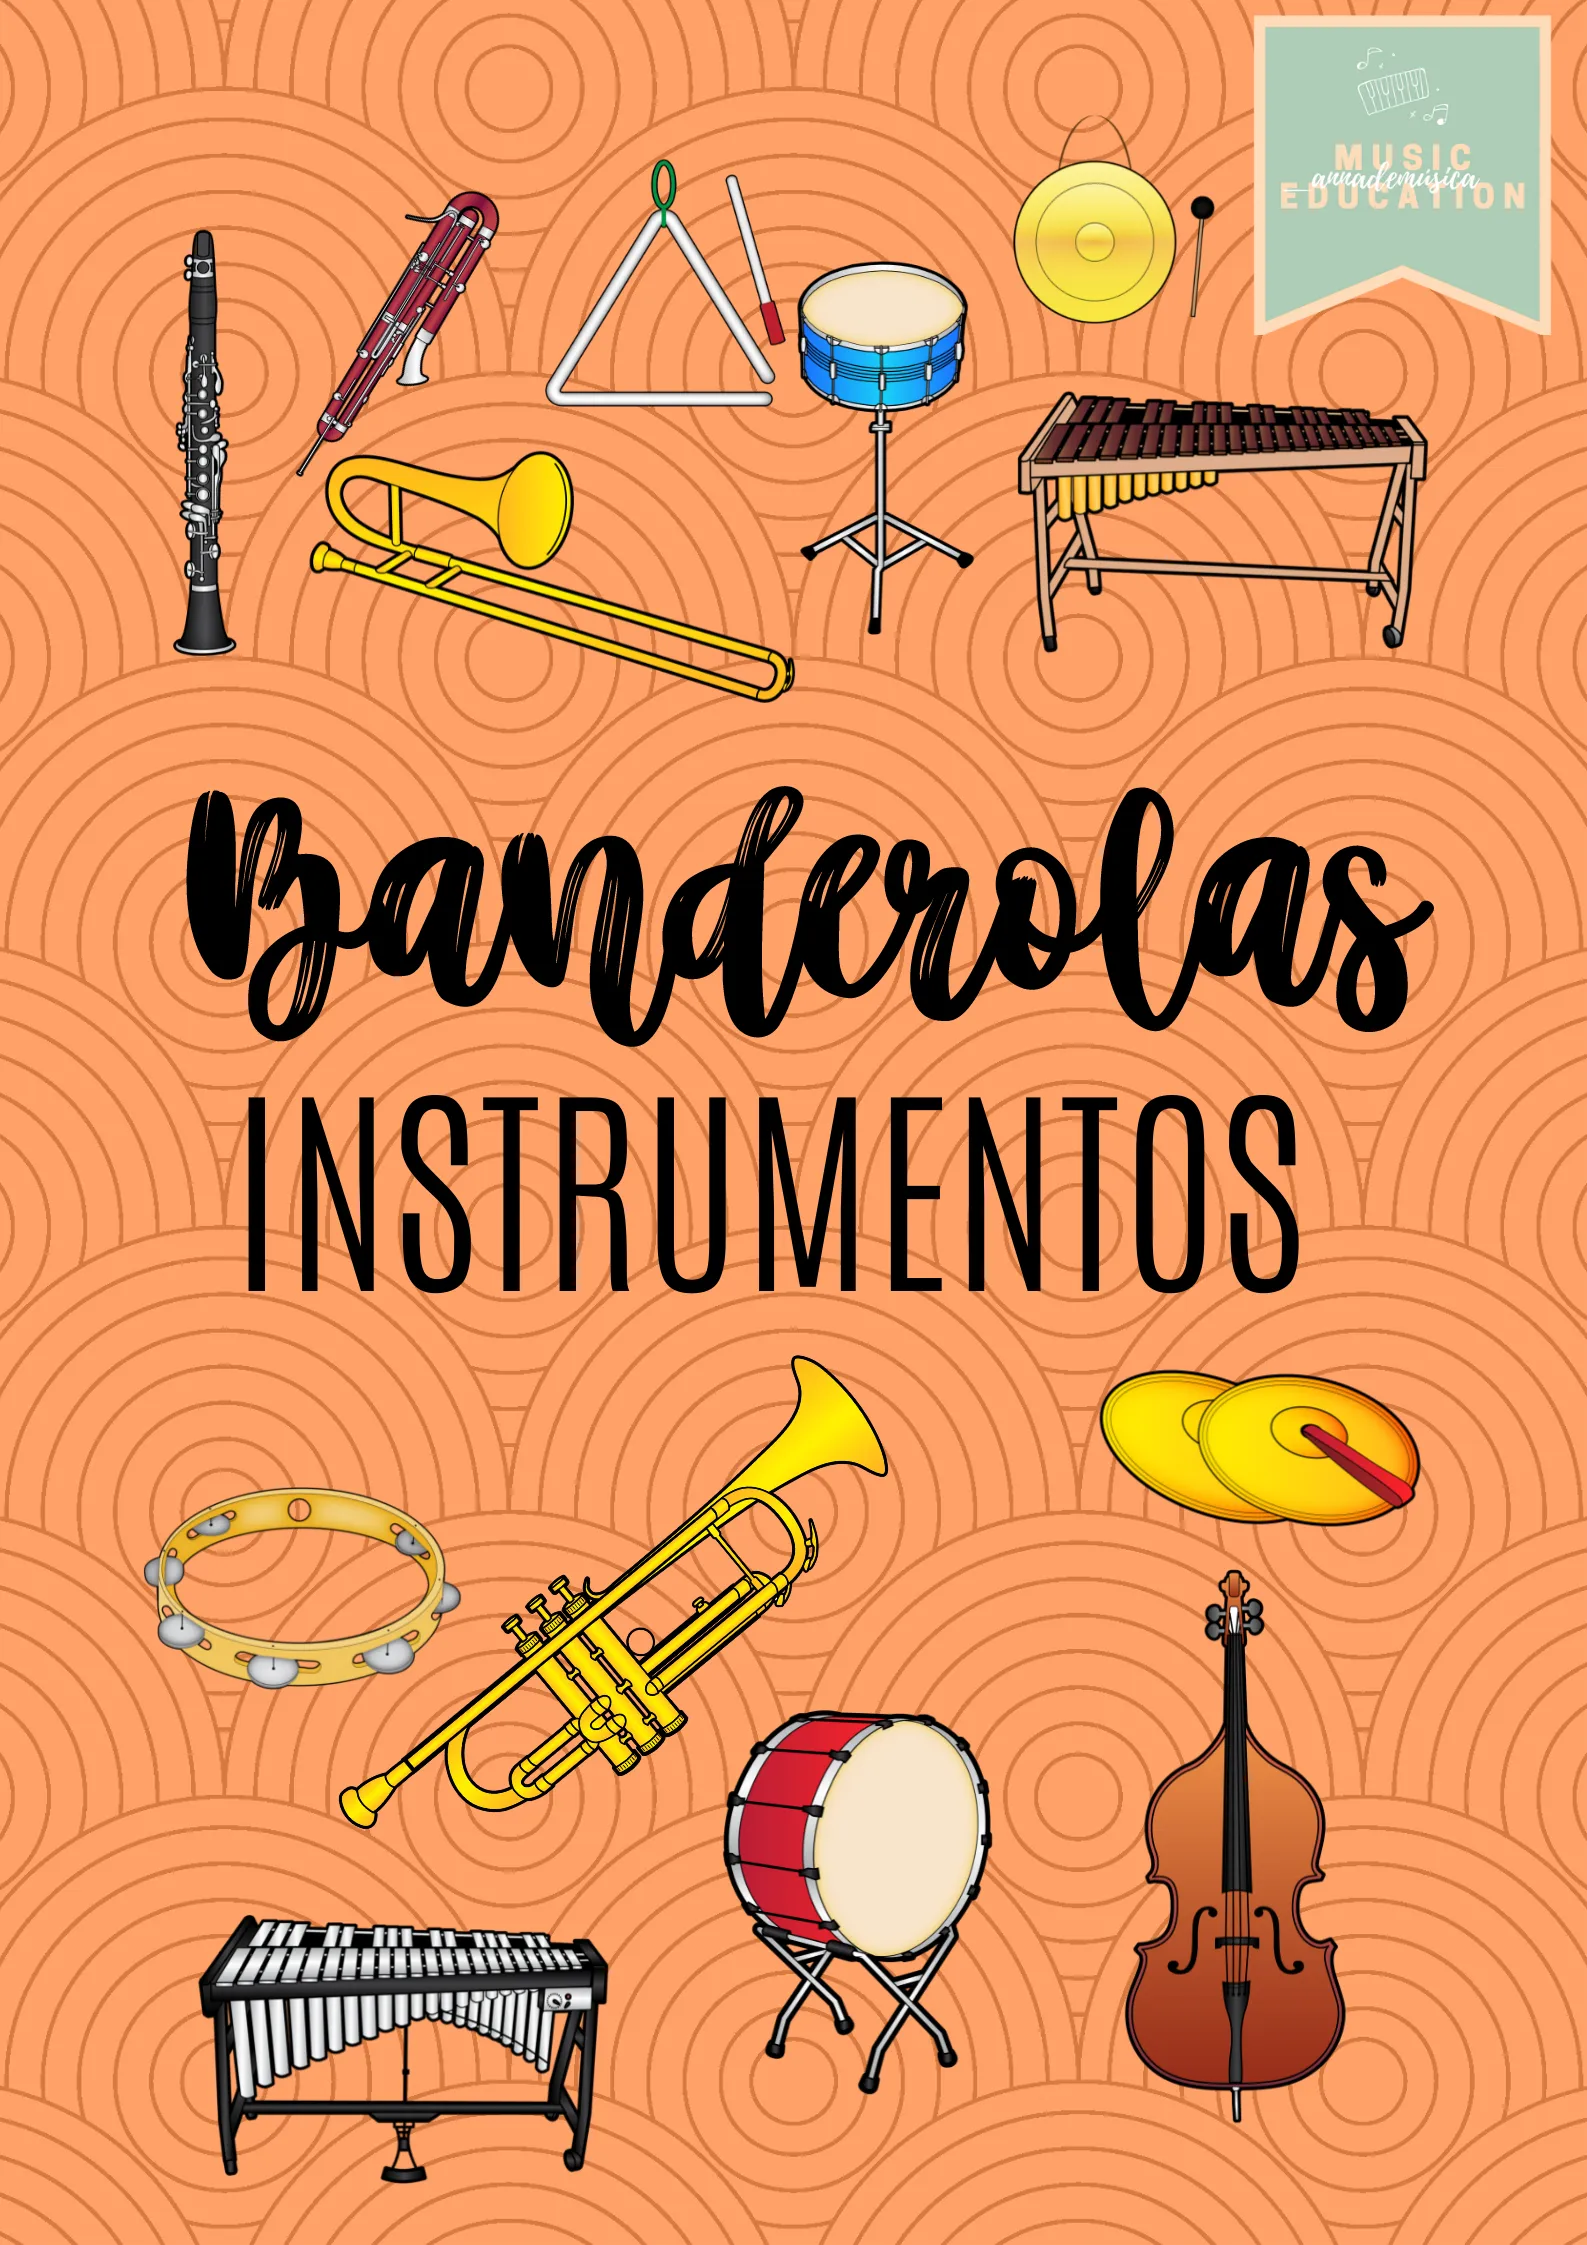 Banderolas de Instrumentos CAST